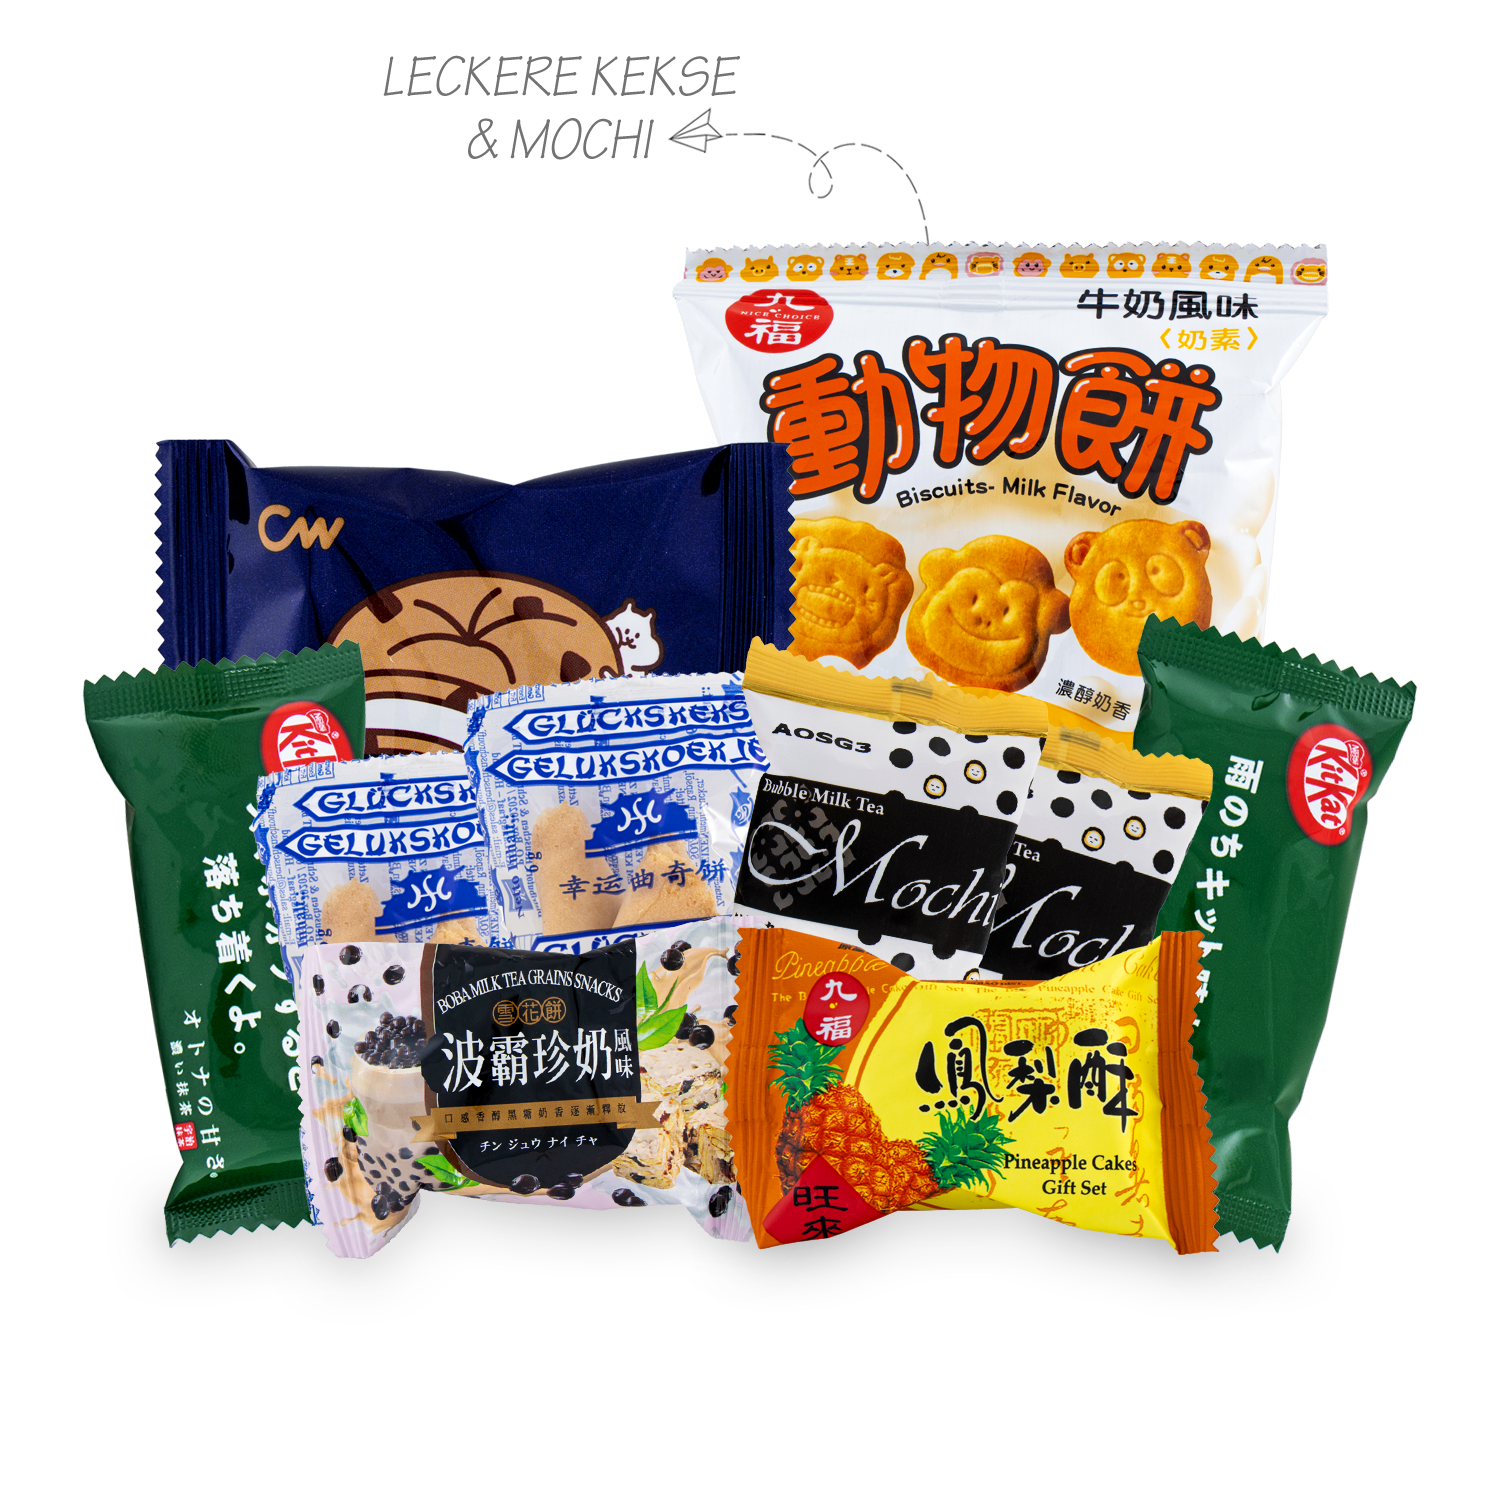 Asiatische Süßigkeiten Box: Überraschungsbox mit über 30 Snacks aus Asien